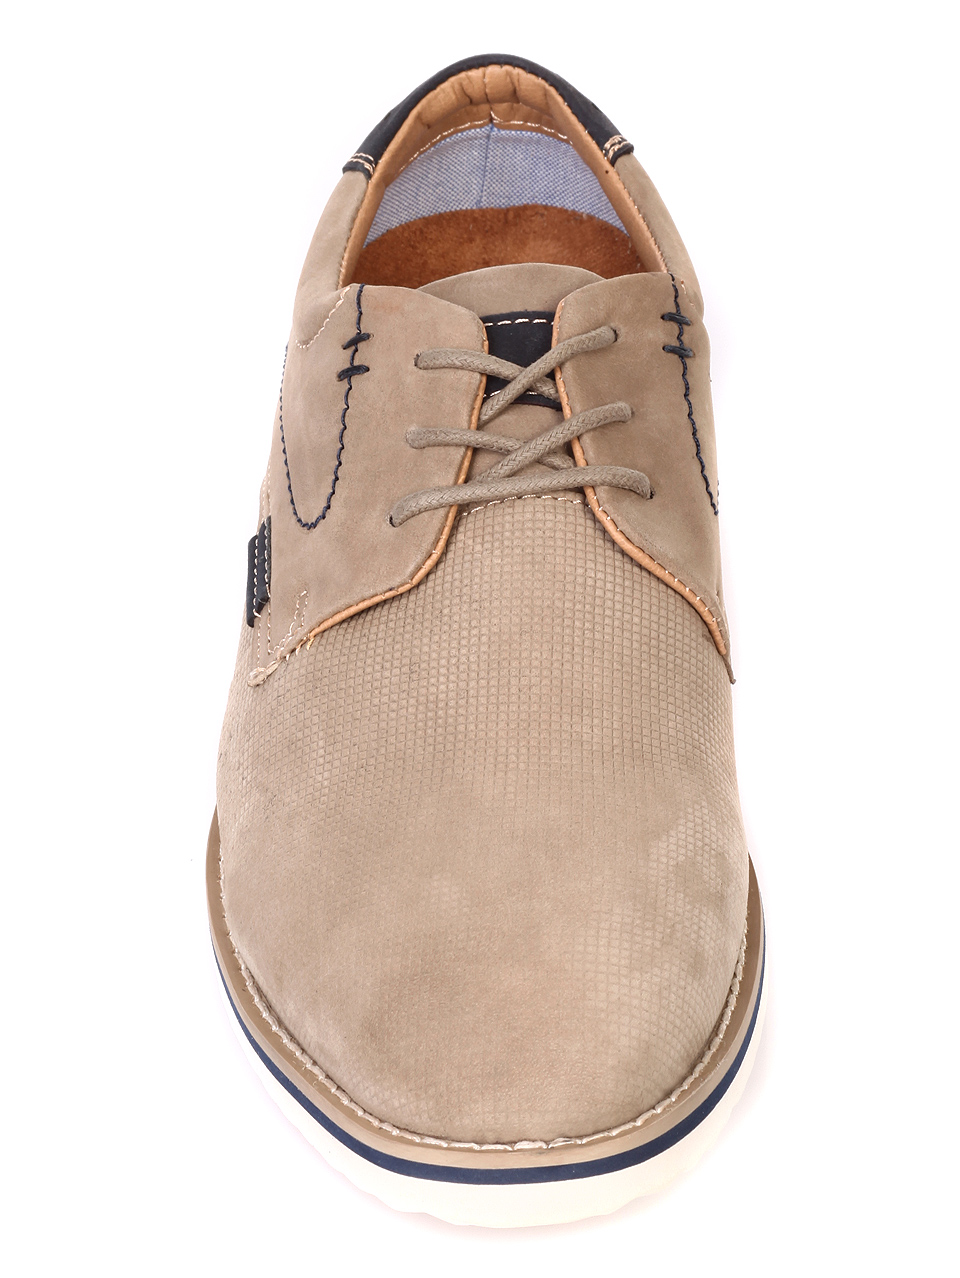 Ежедневни мъжки обувки от естествен набук 7W-19106 beige